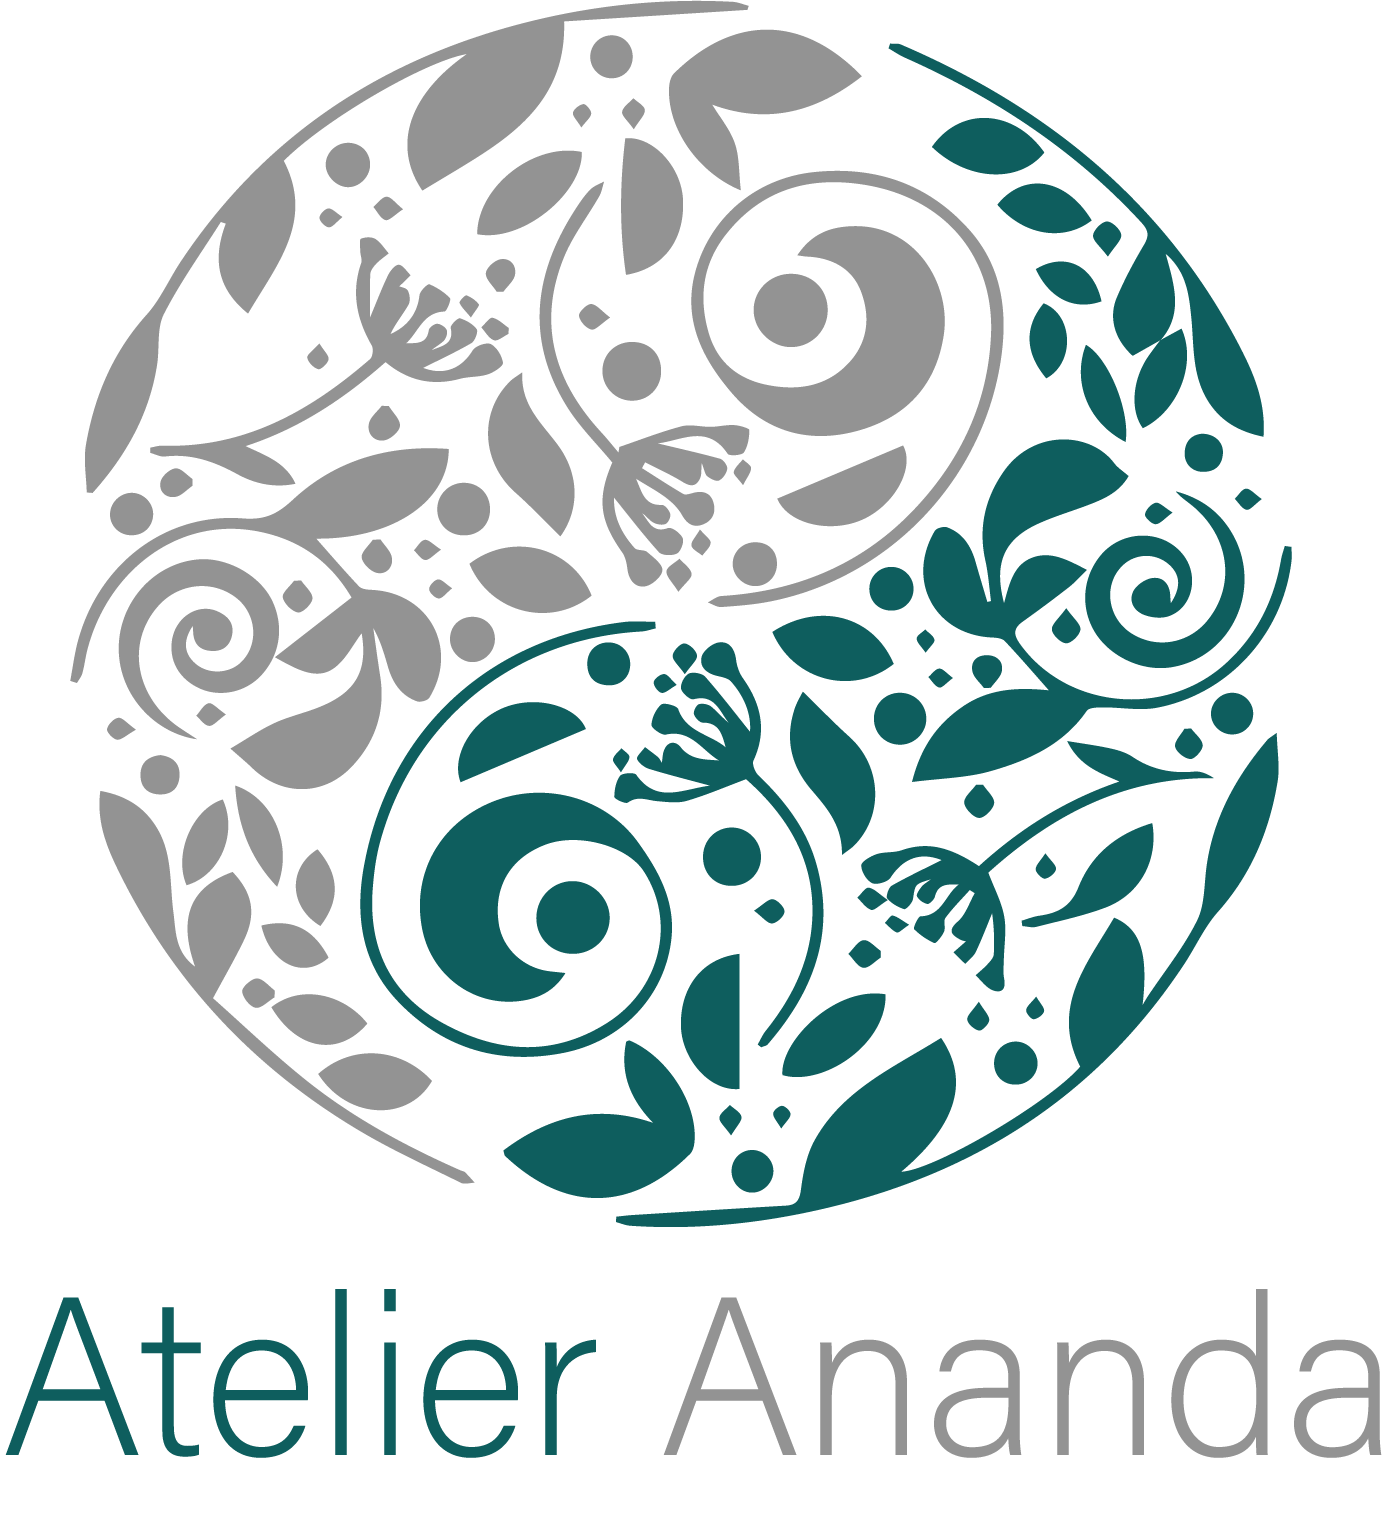 Atelier Ananda